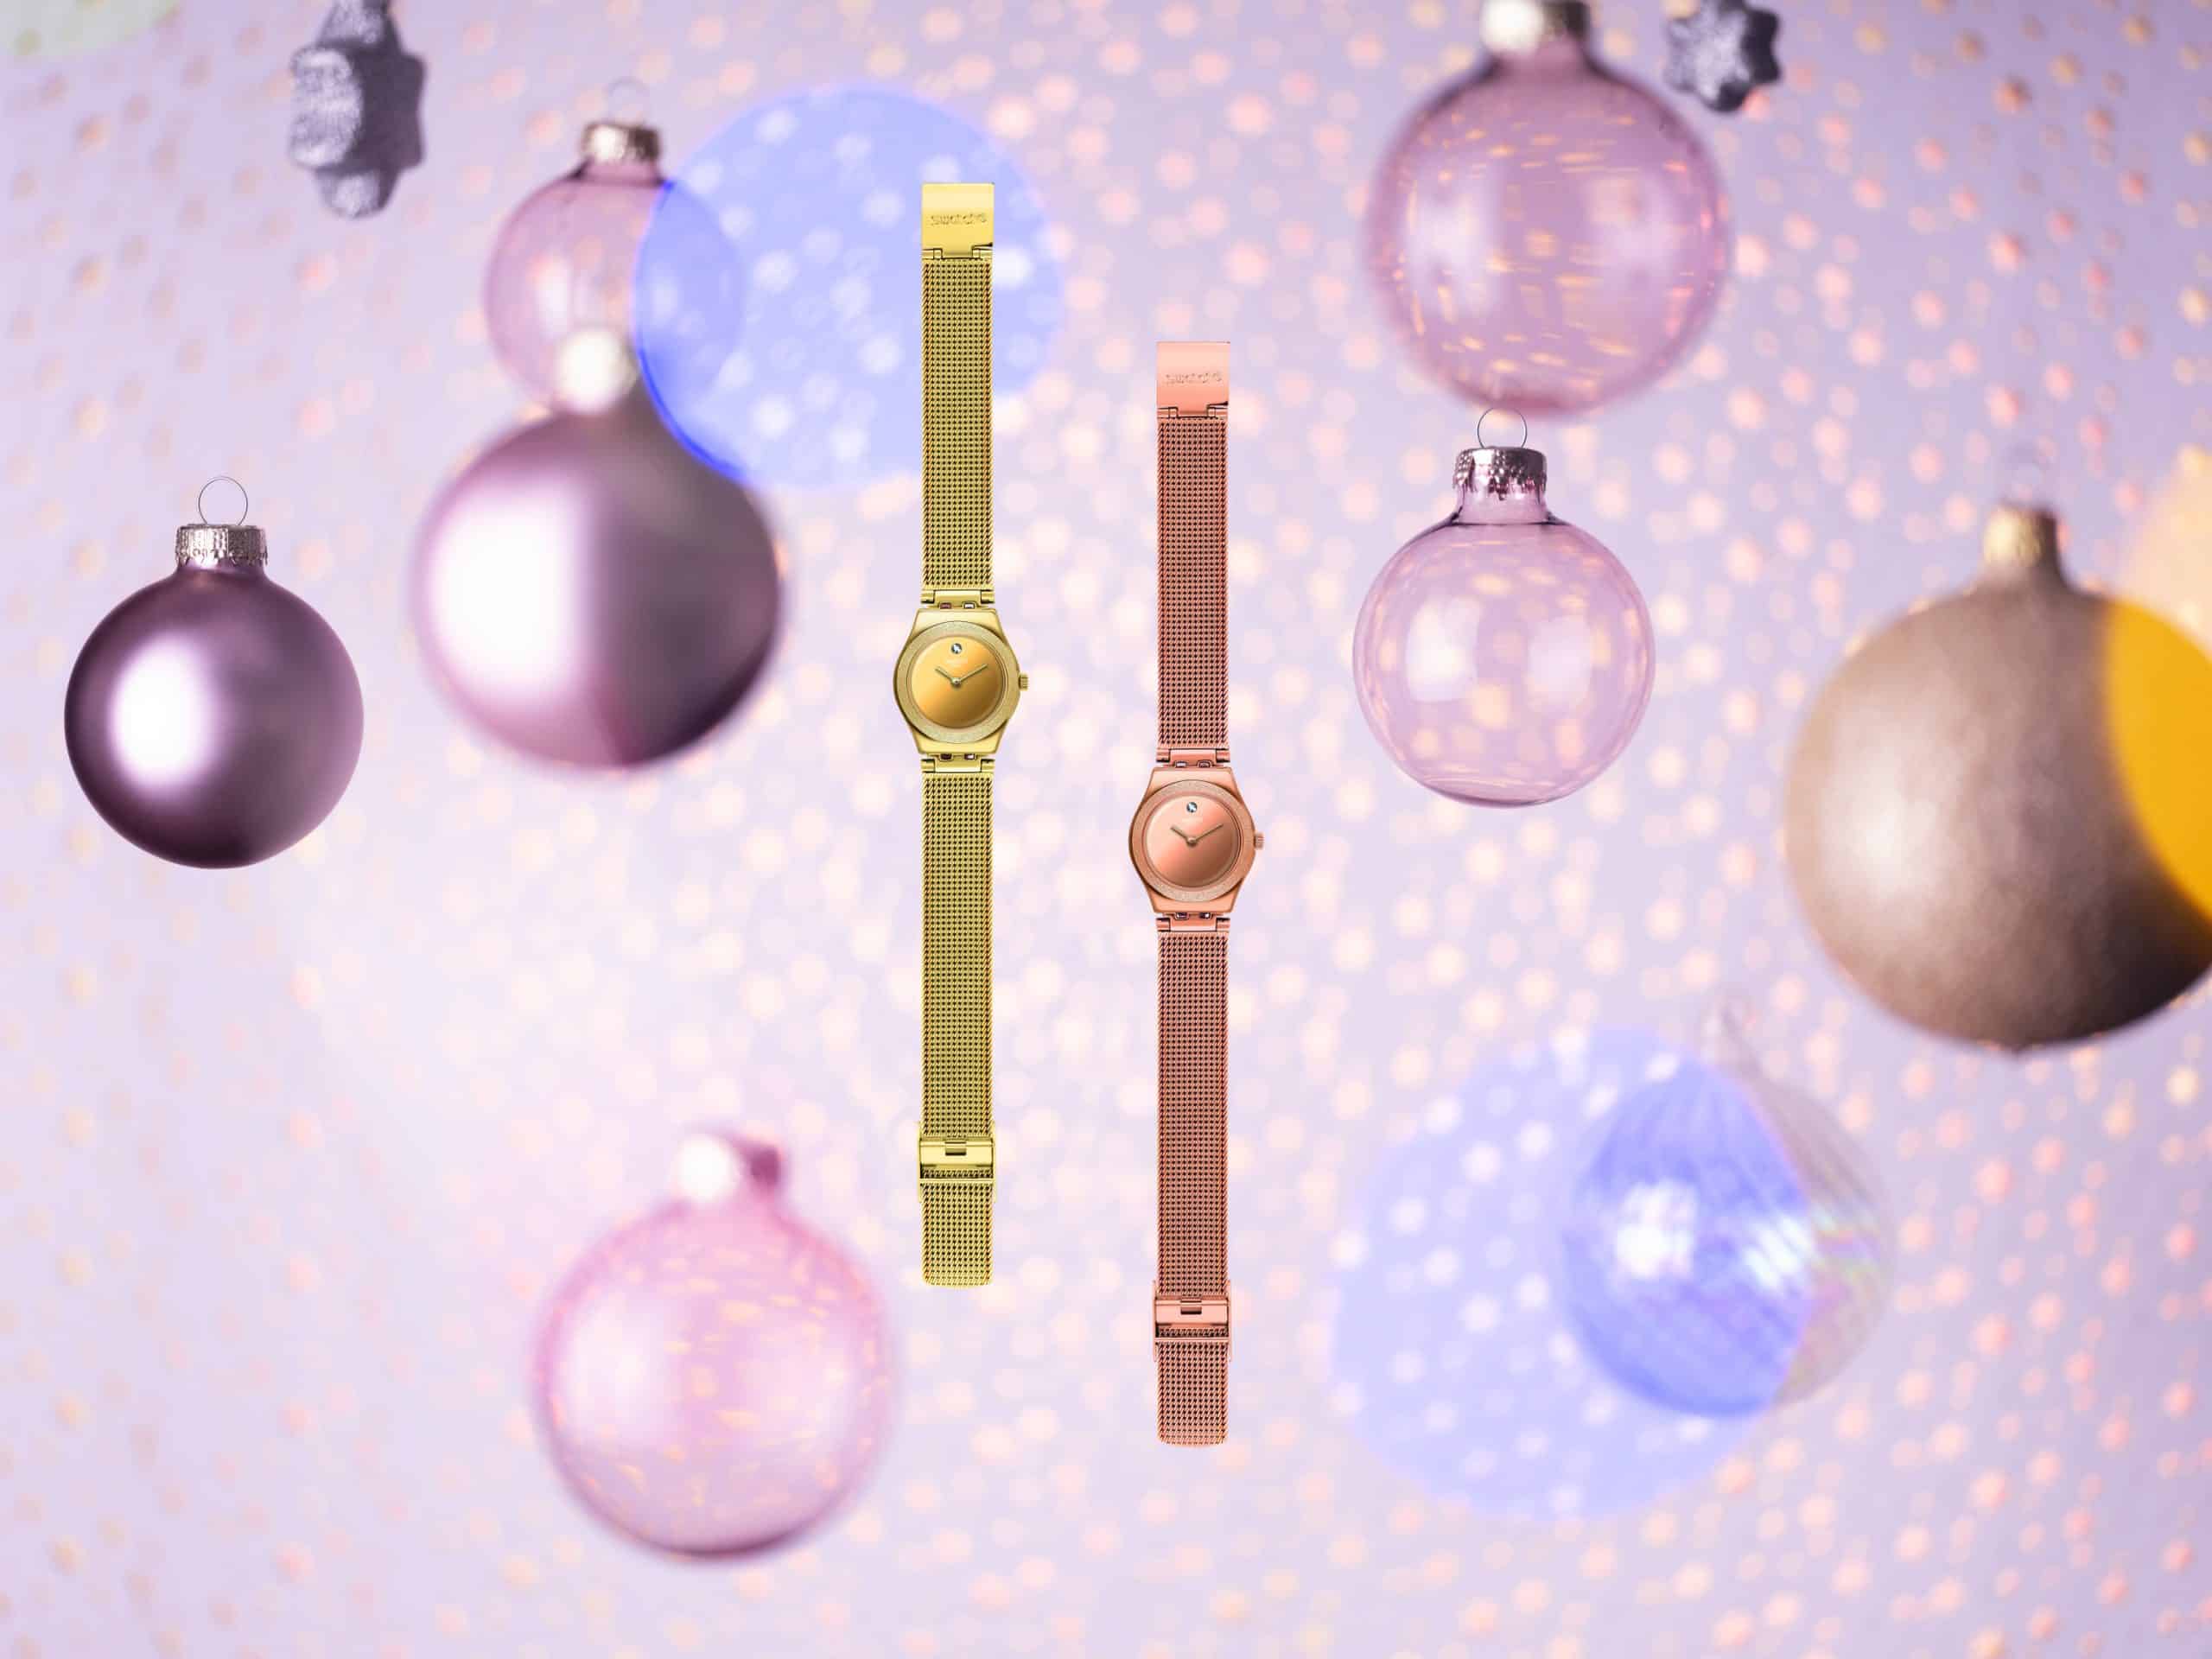 Świąteczna kolekcja wyjątkowych zegarków od marki Swatch